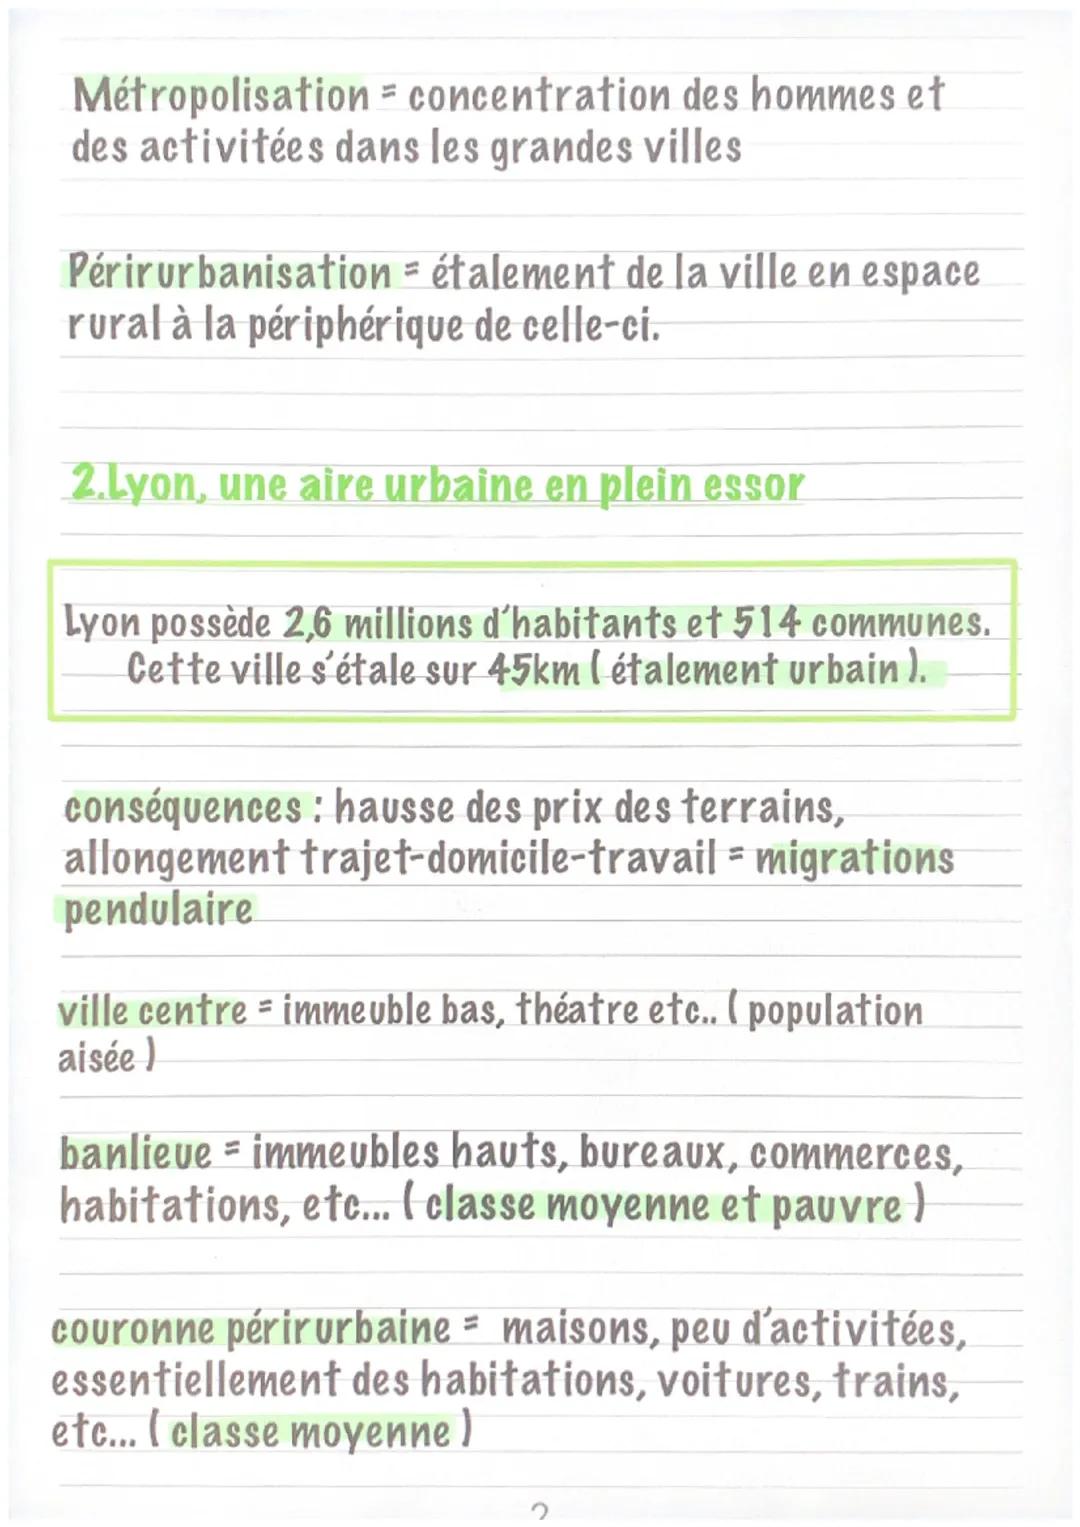 Les dynamiques territoriales
dans une France mondialisée
1.Les aires urbaines
Environ 90% des Français vivent en aire
urbaine. Ce chiffre au